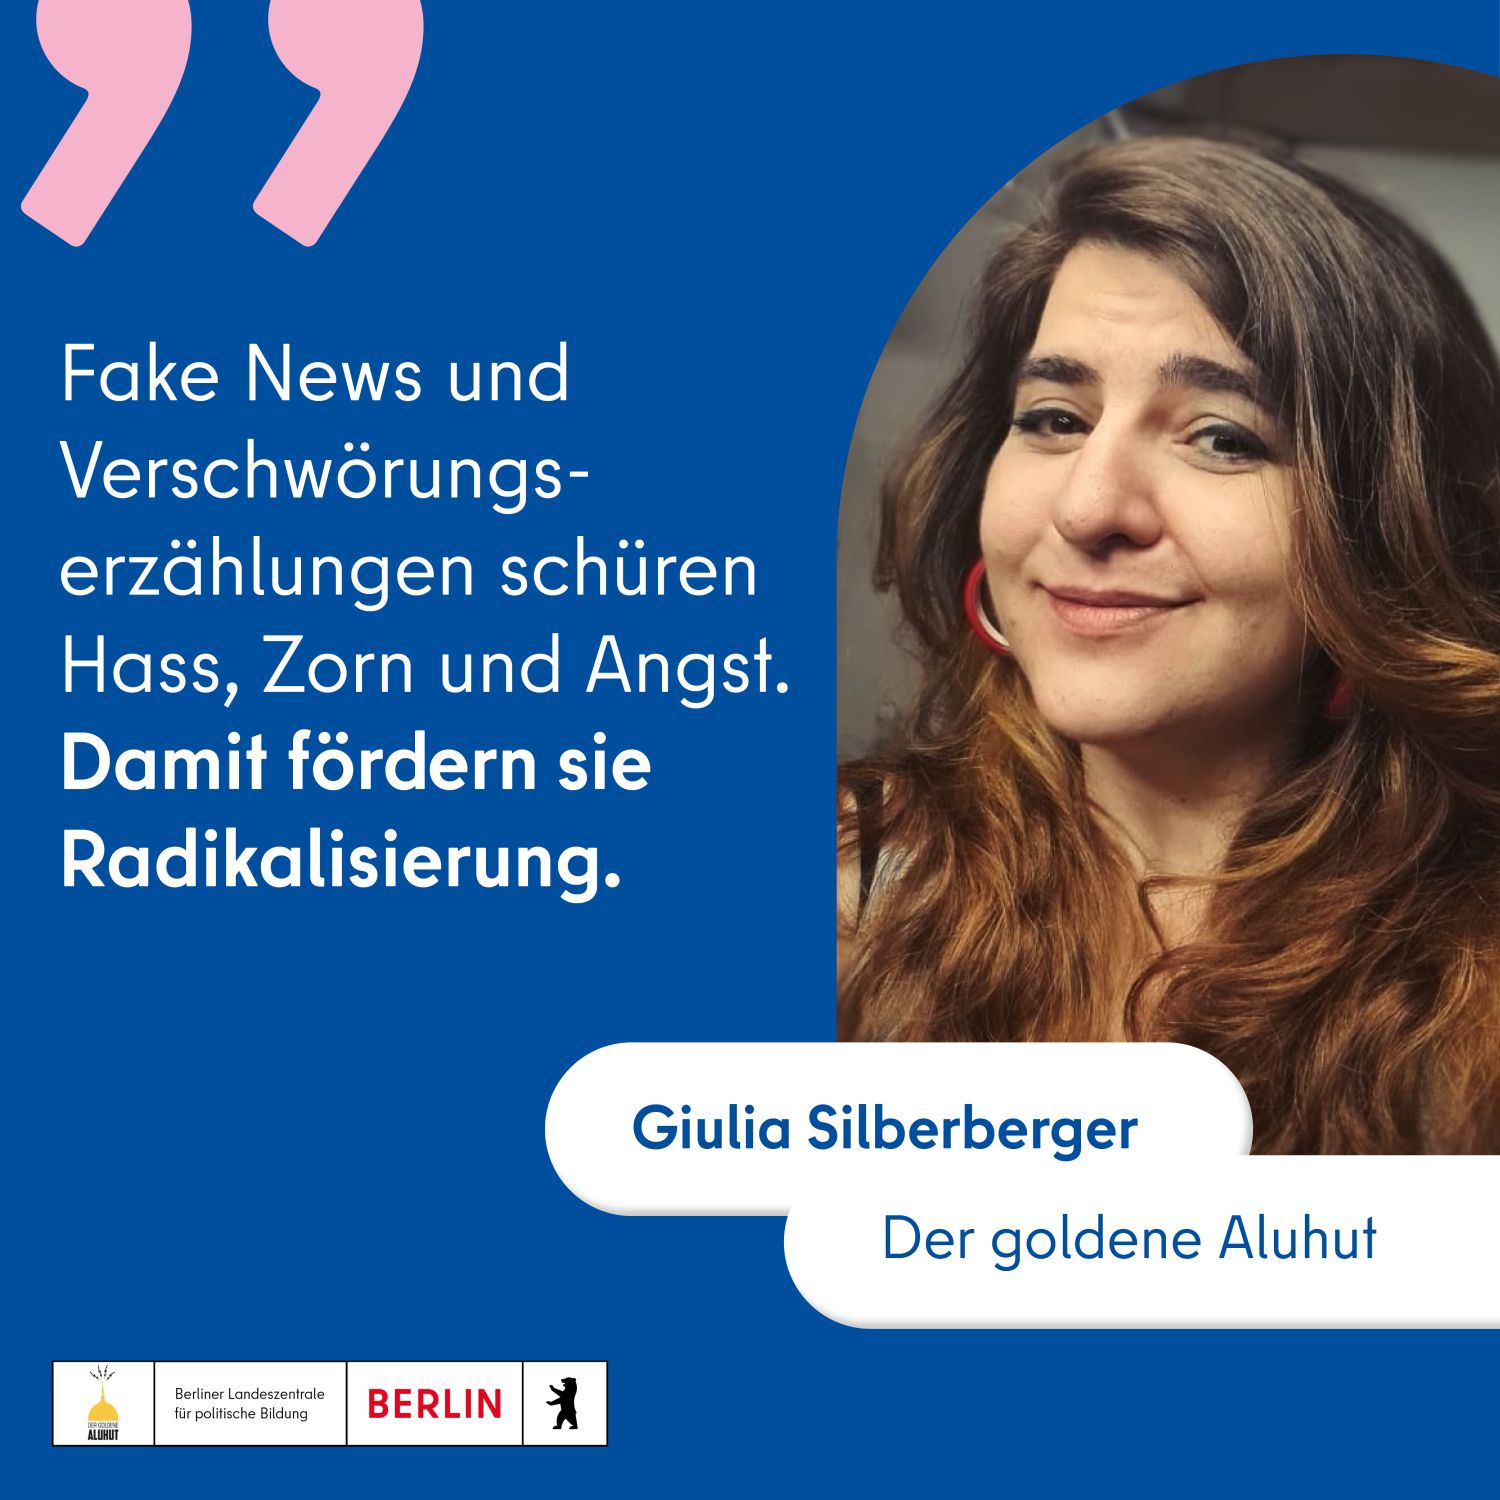 Foto von Giulia Silberberger mit Zitat: "Fake News und Verschwrungserzählungen schüren Hass, Zorn und Angst. Damit fördern sie Radikalisierung."